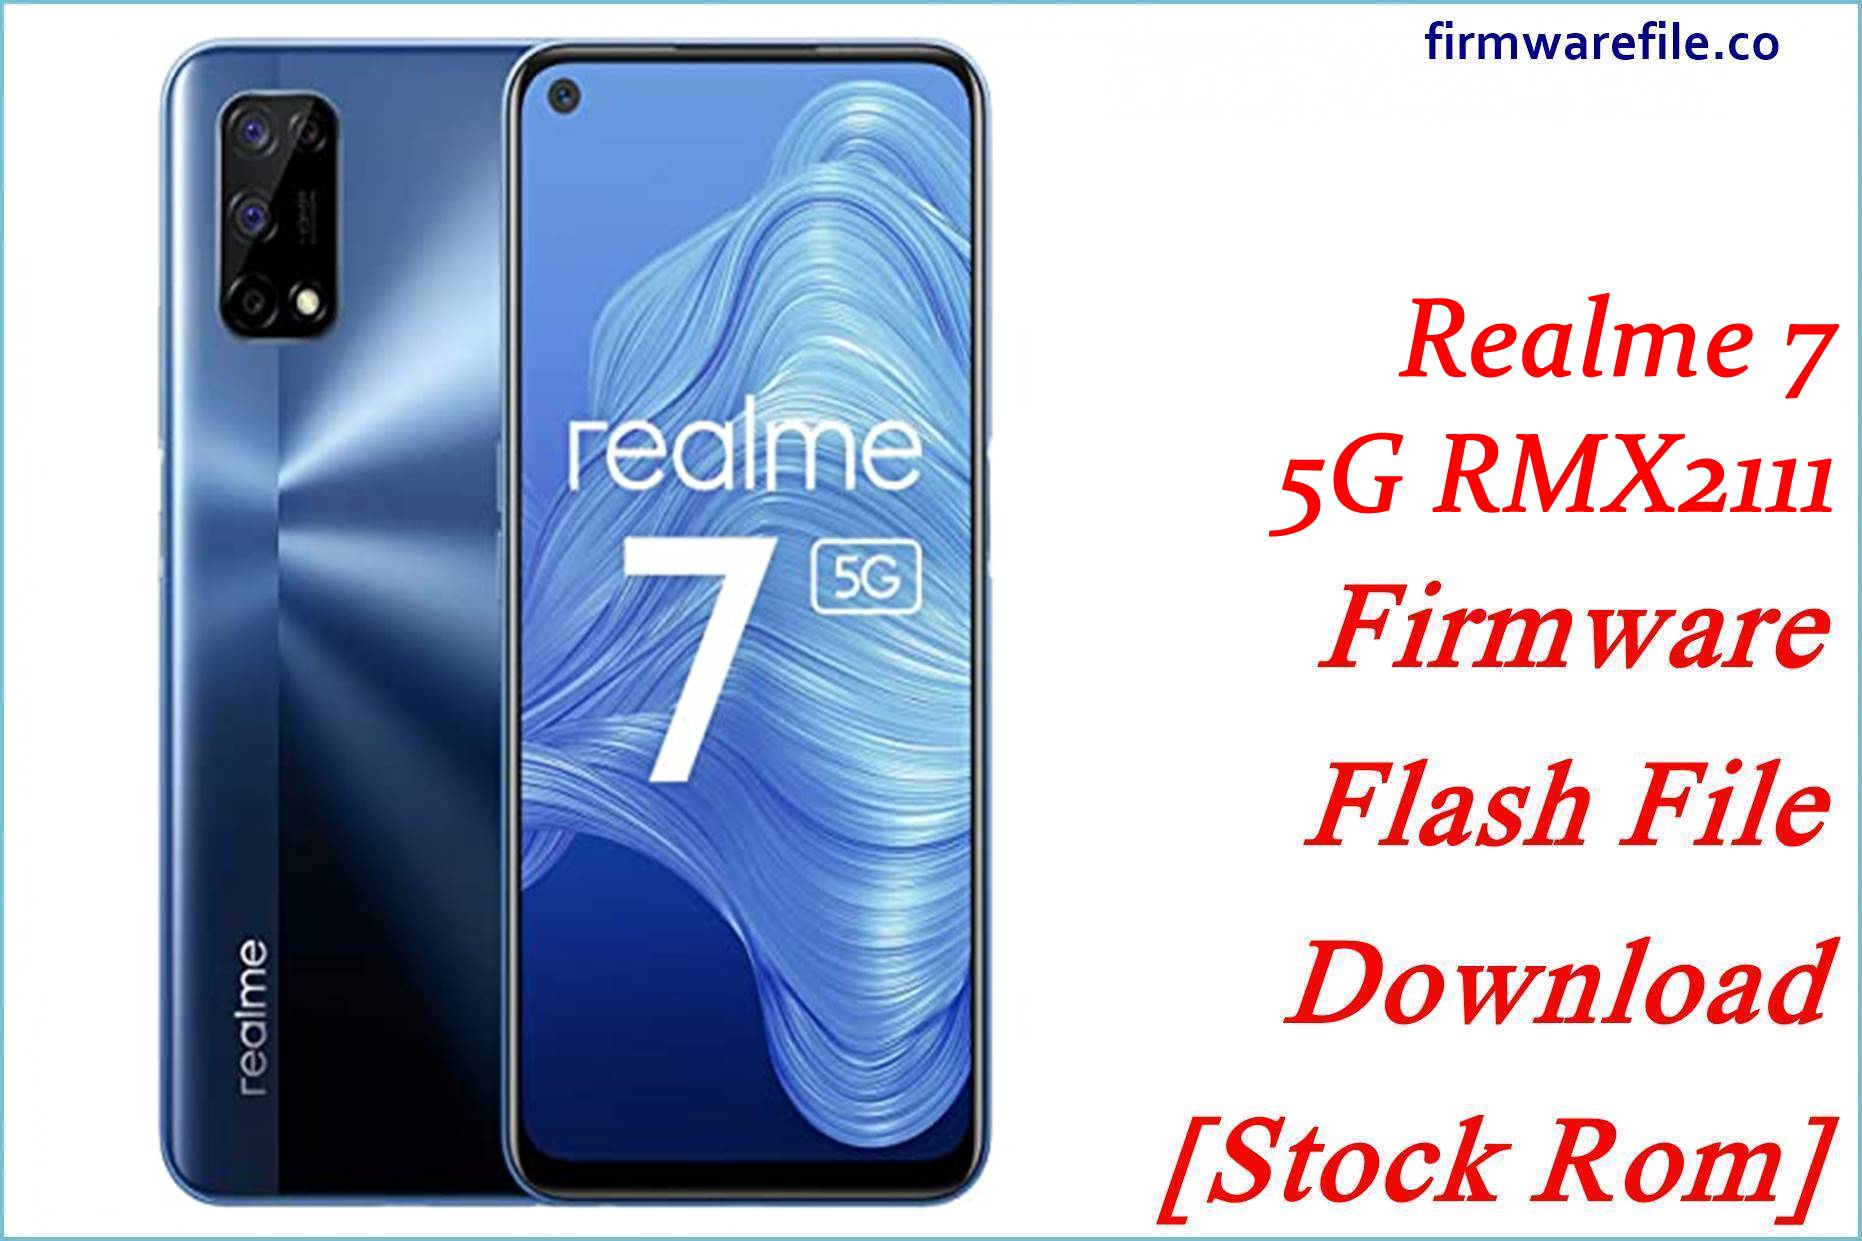 Realme 7 5G RMX2111